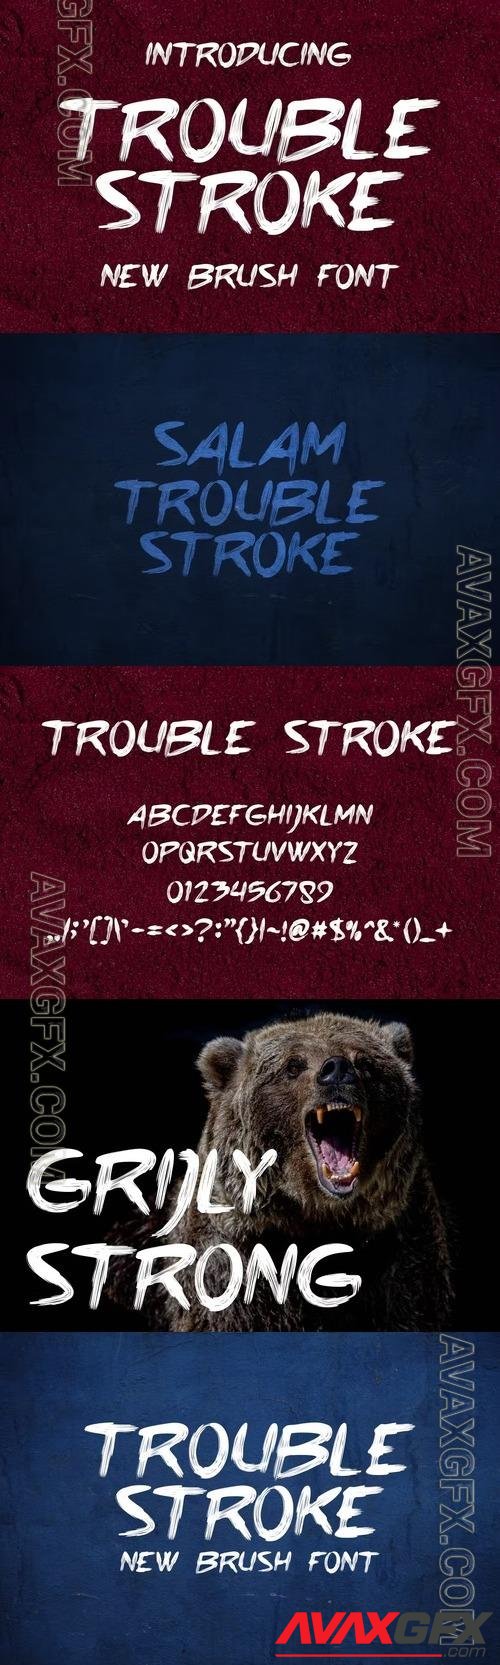 Trouble Stroke Fonts